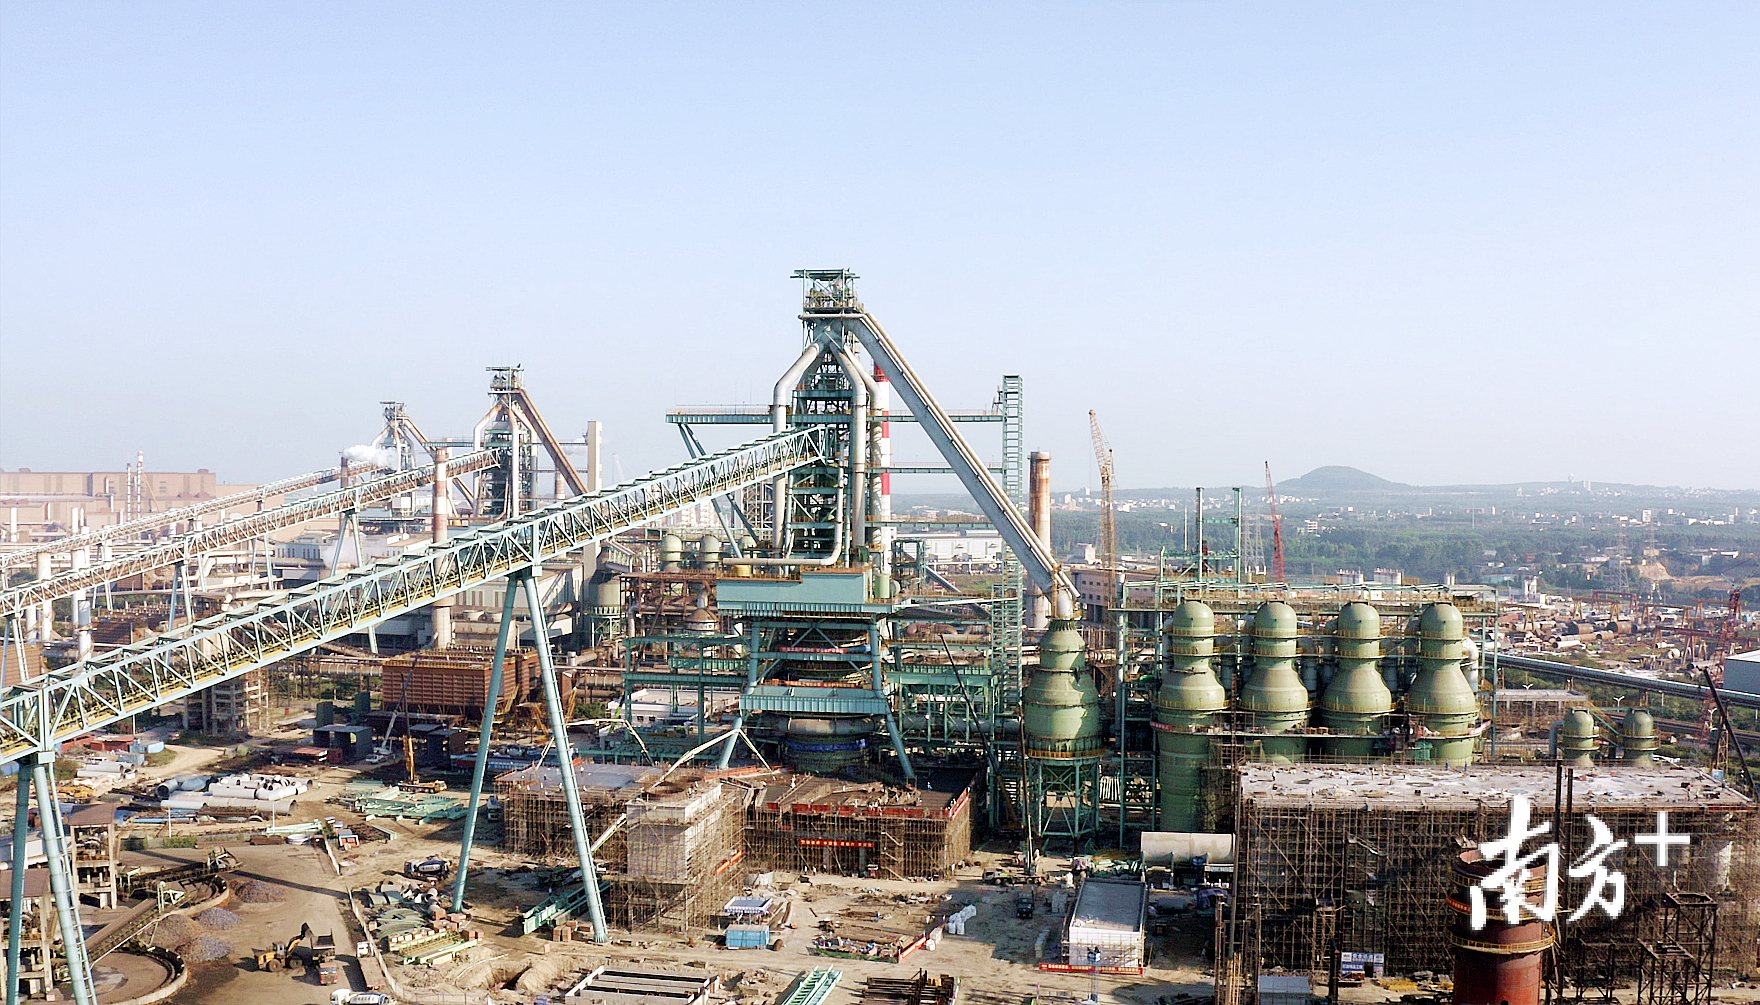 宝钢湛江钢铁3号高炉计划今年7月建成投产,建成后年新增铁水402万吨